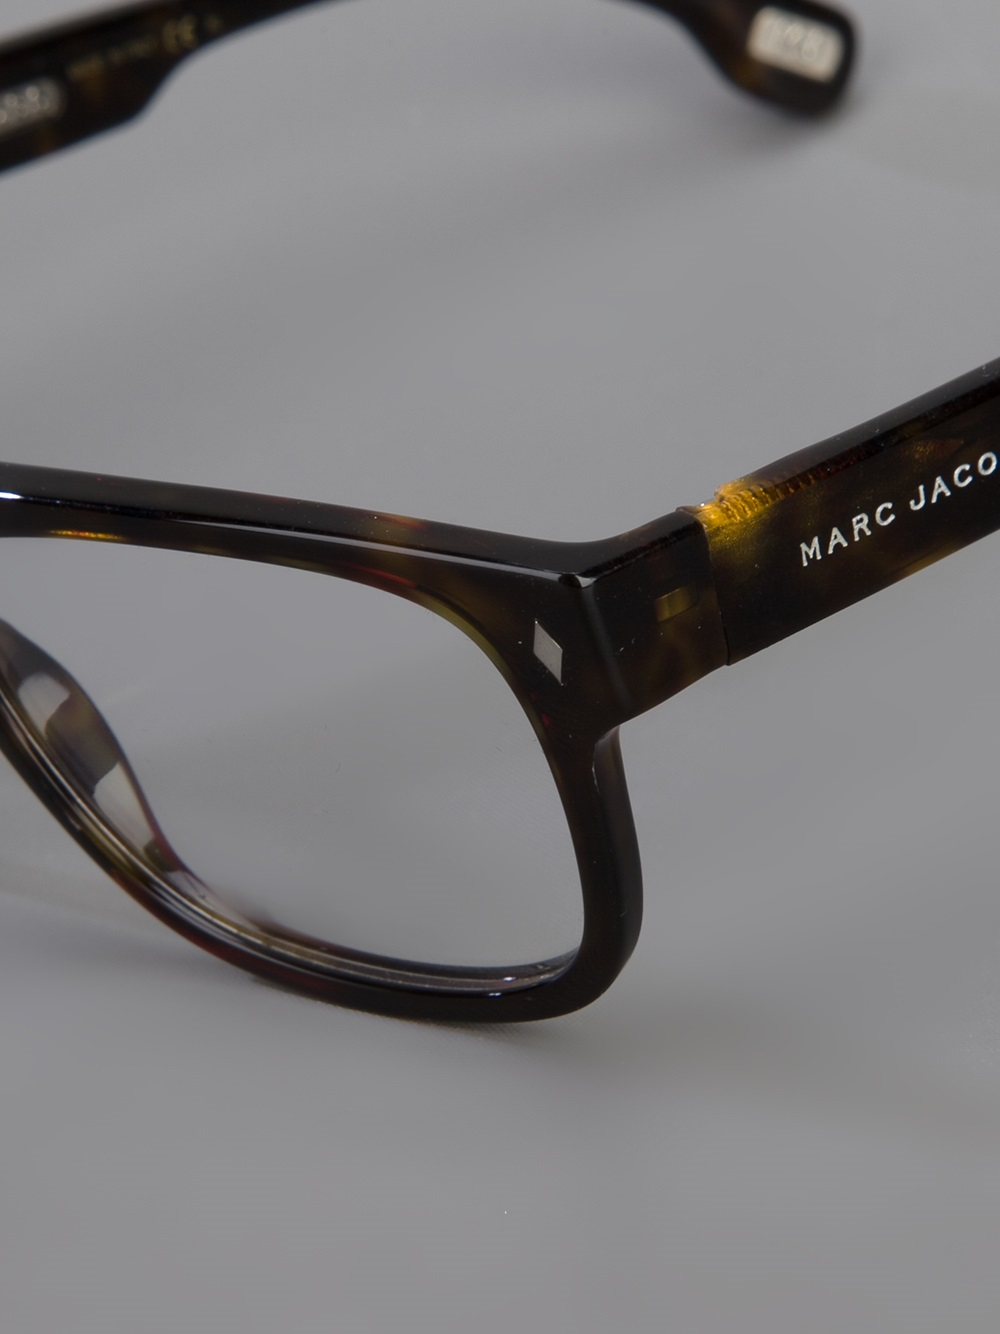 Marc Jacobs Tortoise Shell Glasses in Black for Men - Lyst